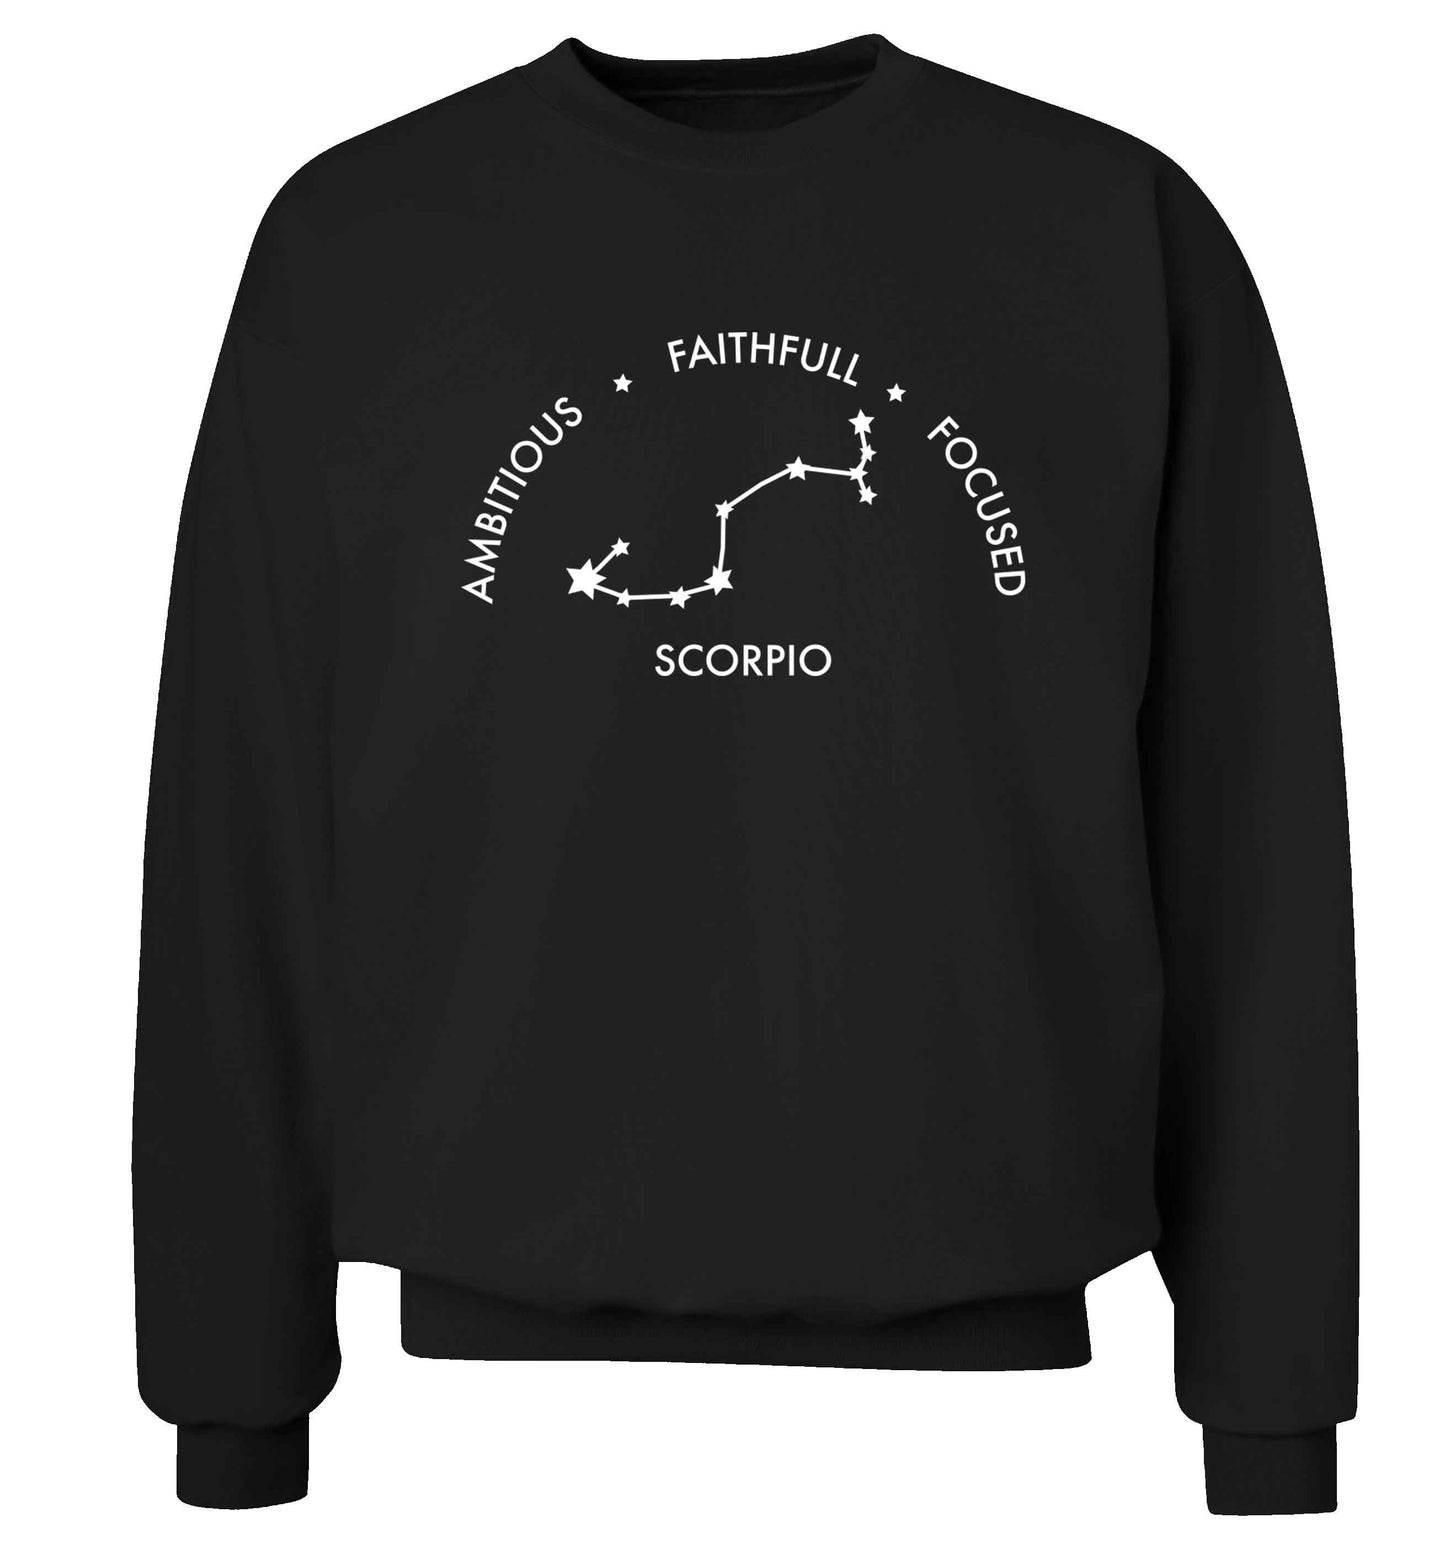 Scorpio, ambitious, faithfull, focused Adult's unisex black Sweater 2XL